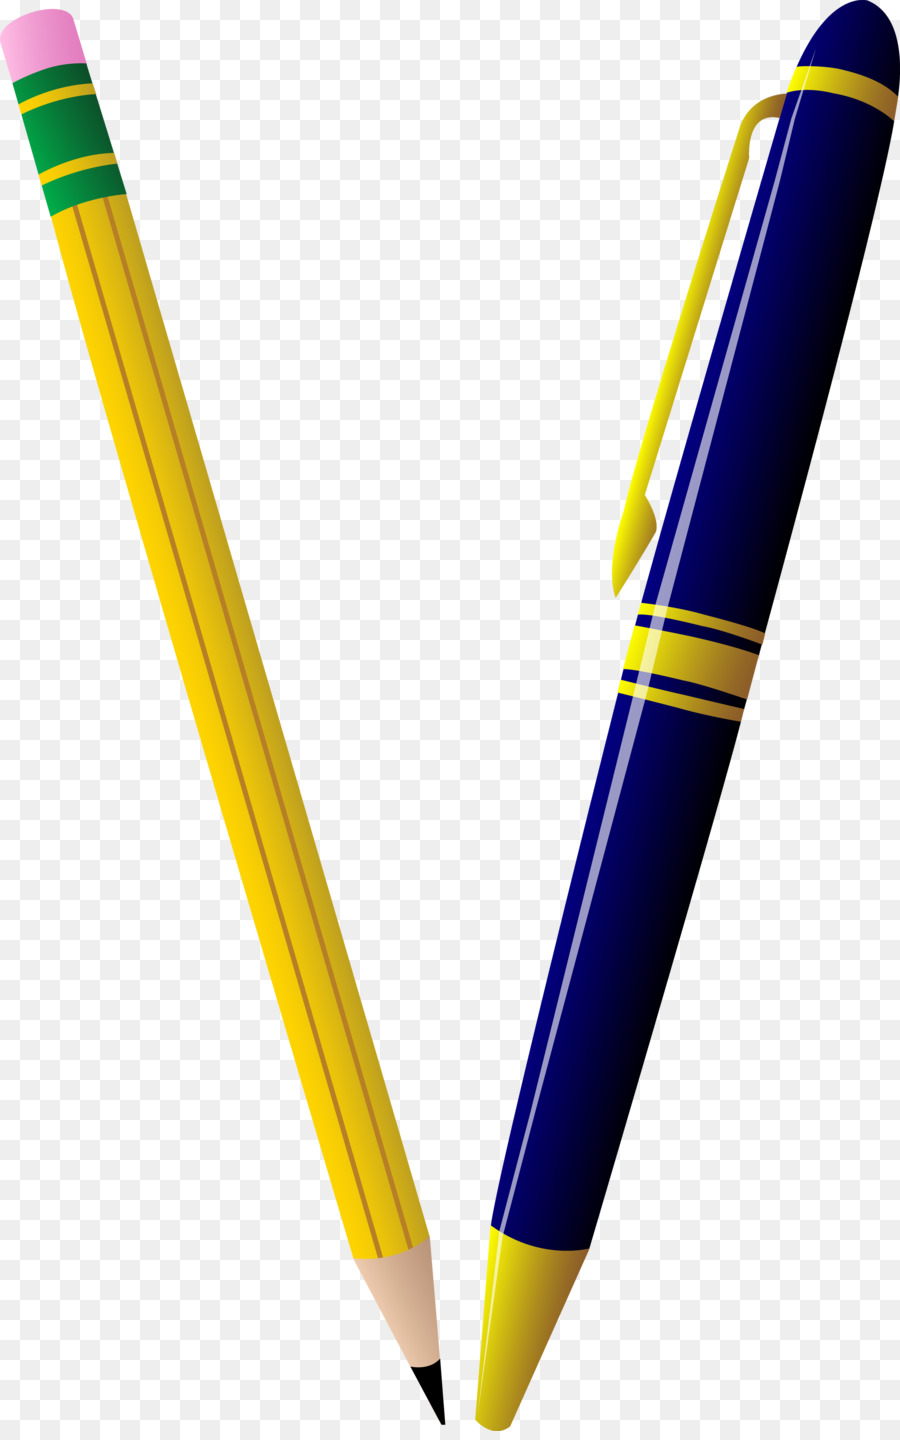 Pencil Ballpoint pen Clip art - Pens Cliparts png download - 2515*4000 - Free Transparent Pencil png Download.